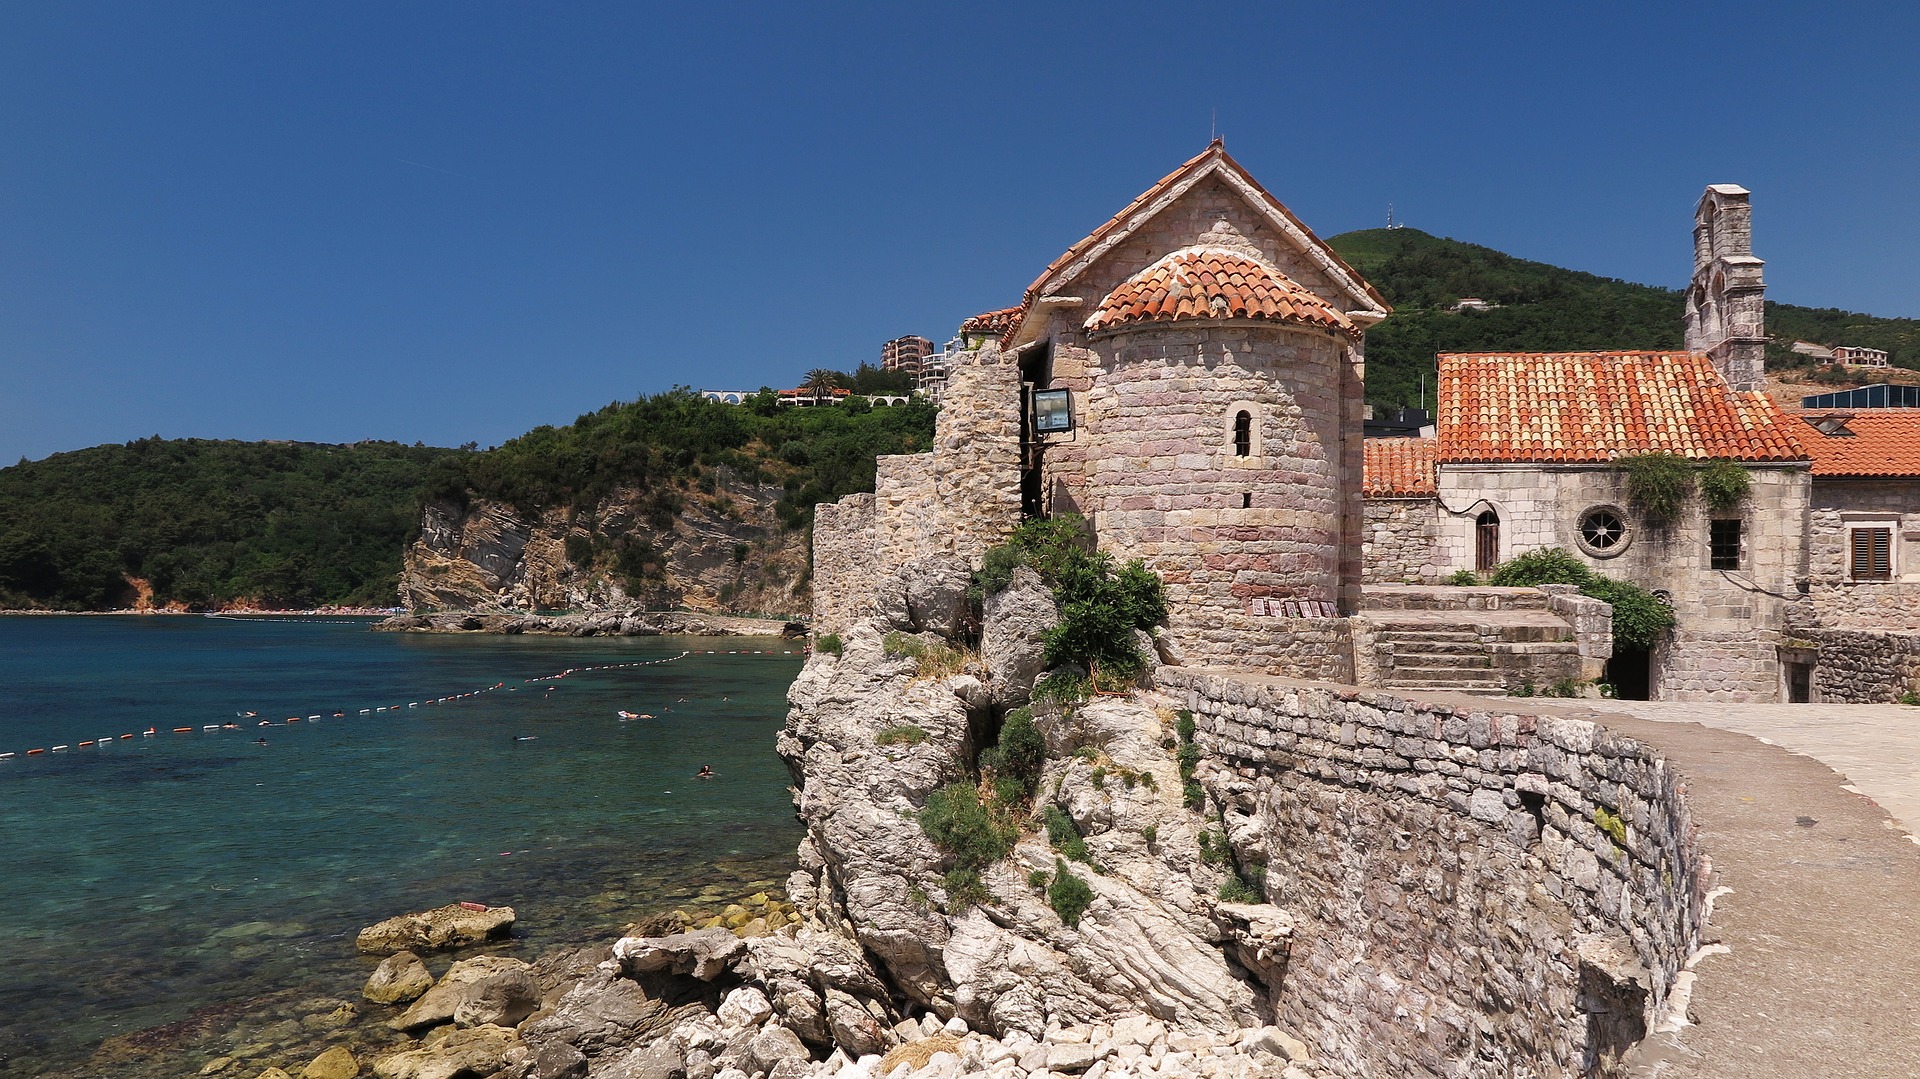 300 евро за двоих: туры в Черногорию на лето предлагают в два раза дешевле